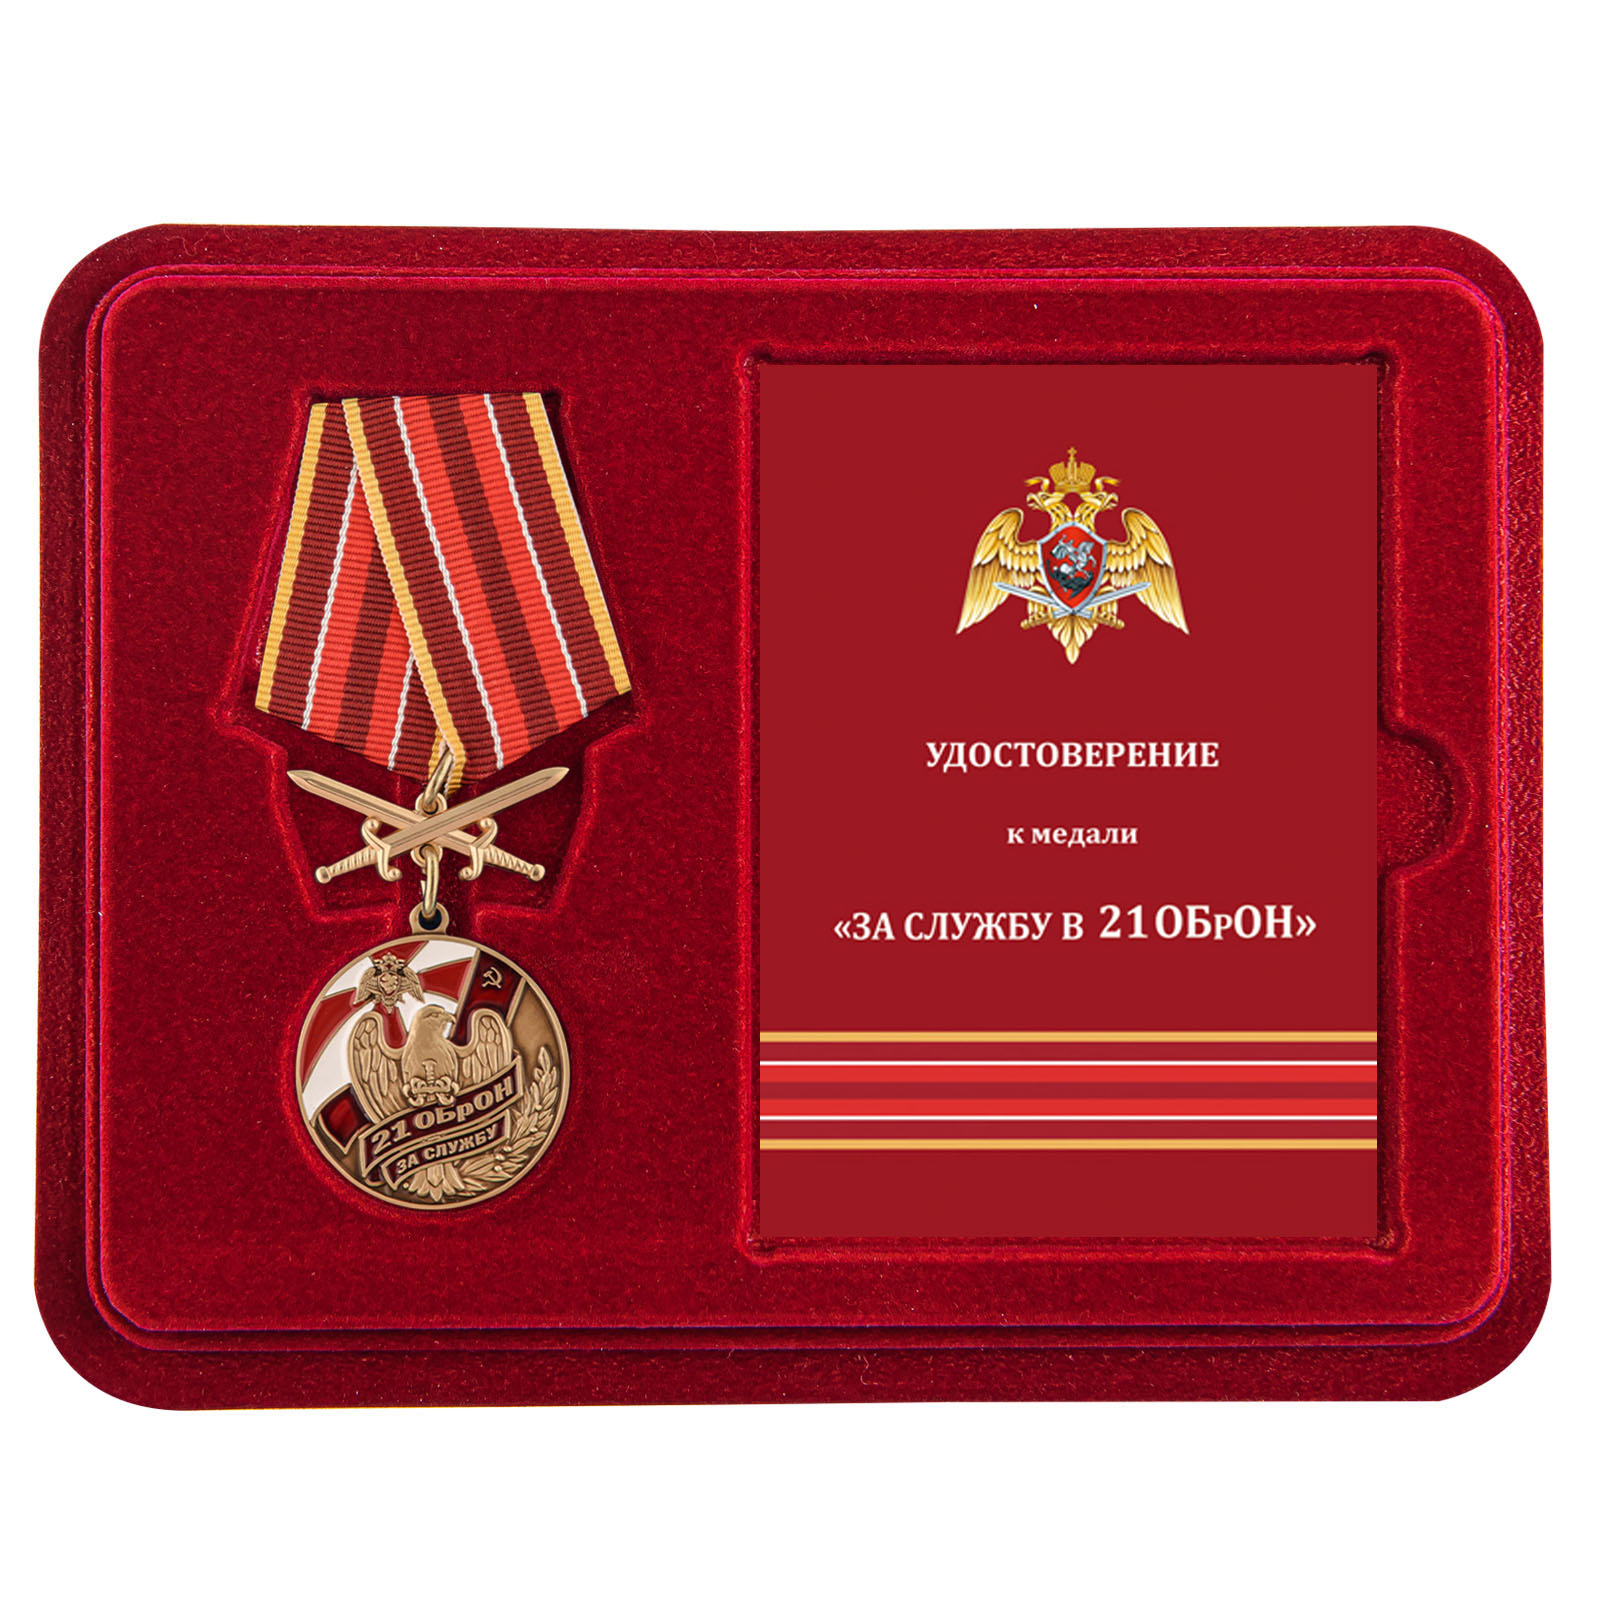 Купить медаль За службу в 21 ОБрОН с доставкой в ваш город